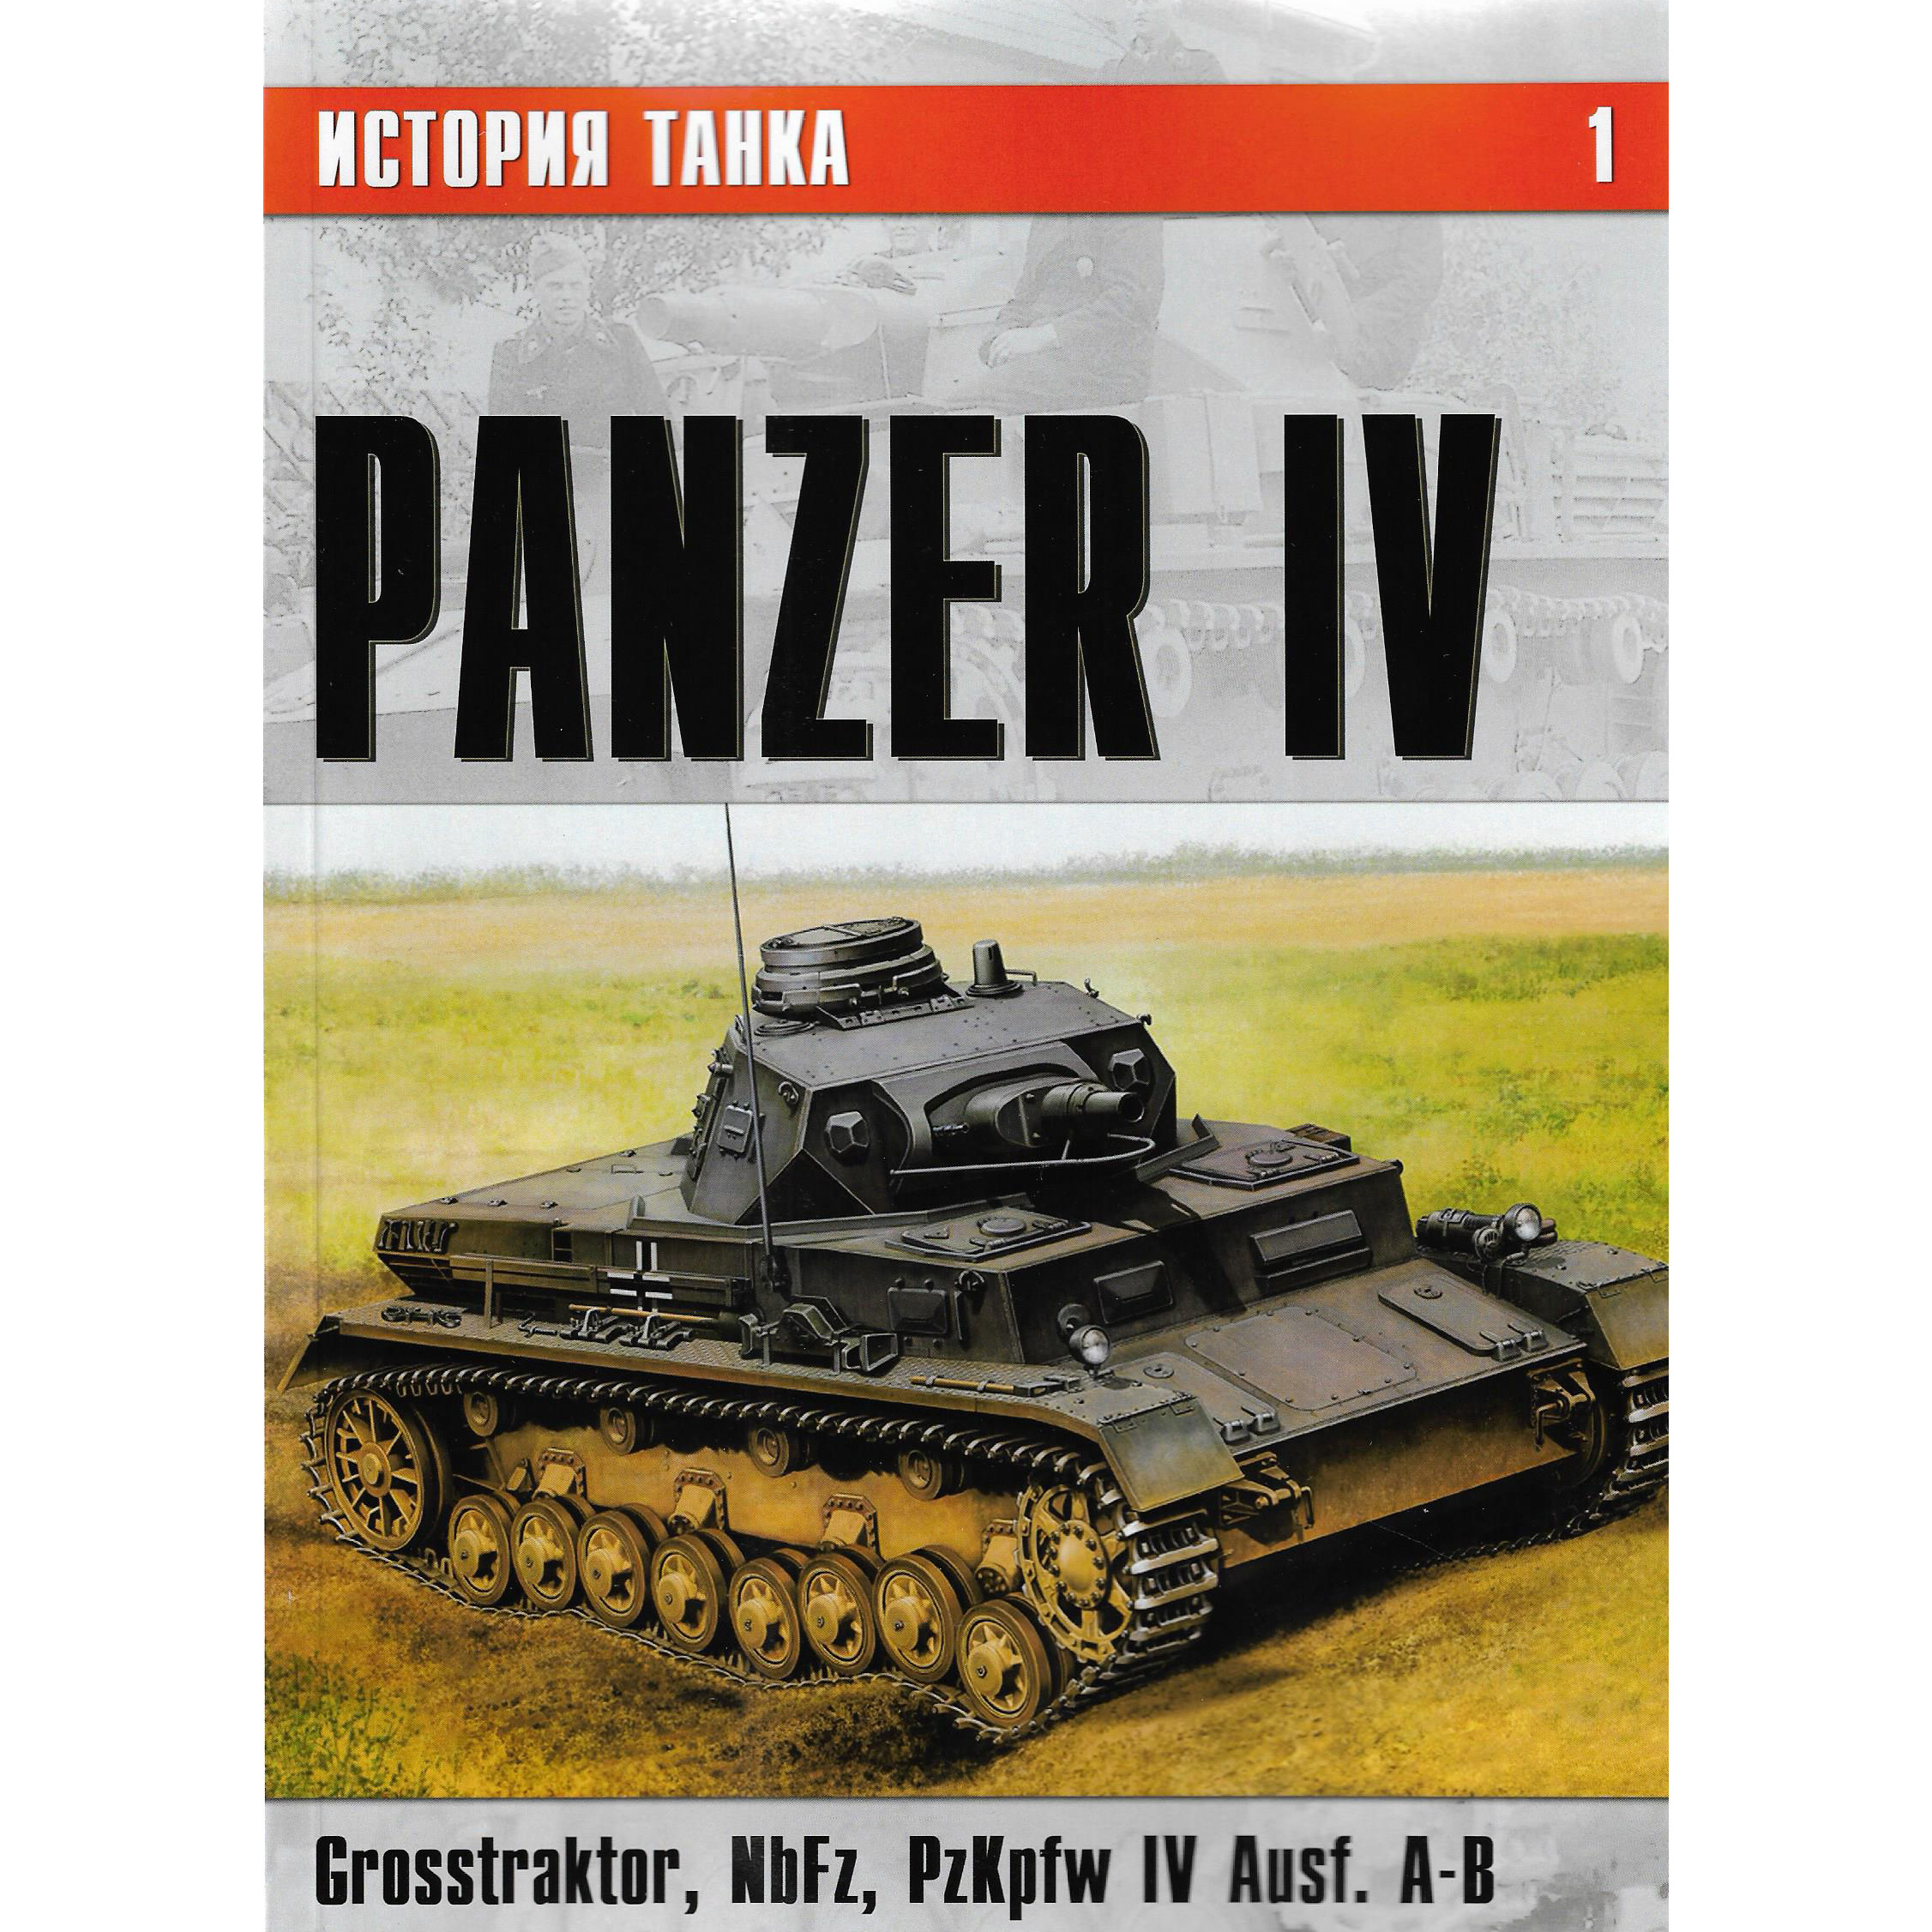 1-1 Evgeny Grechany The history of tank No. 1. Panzer IV